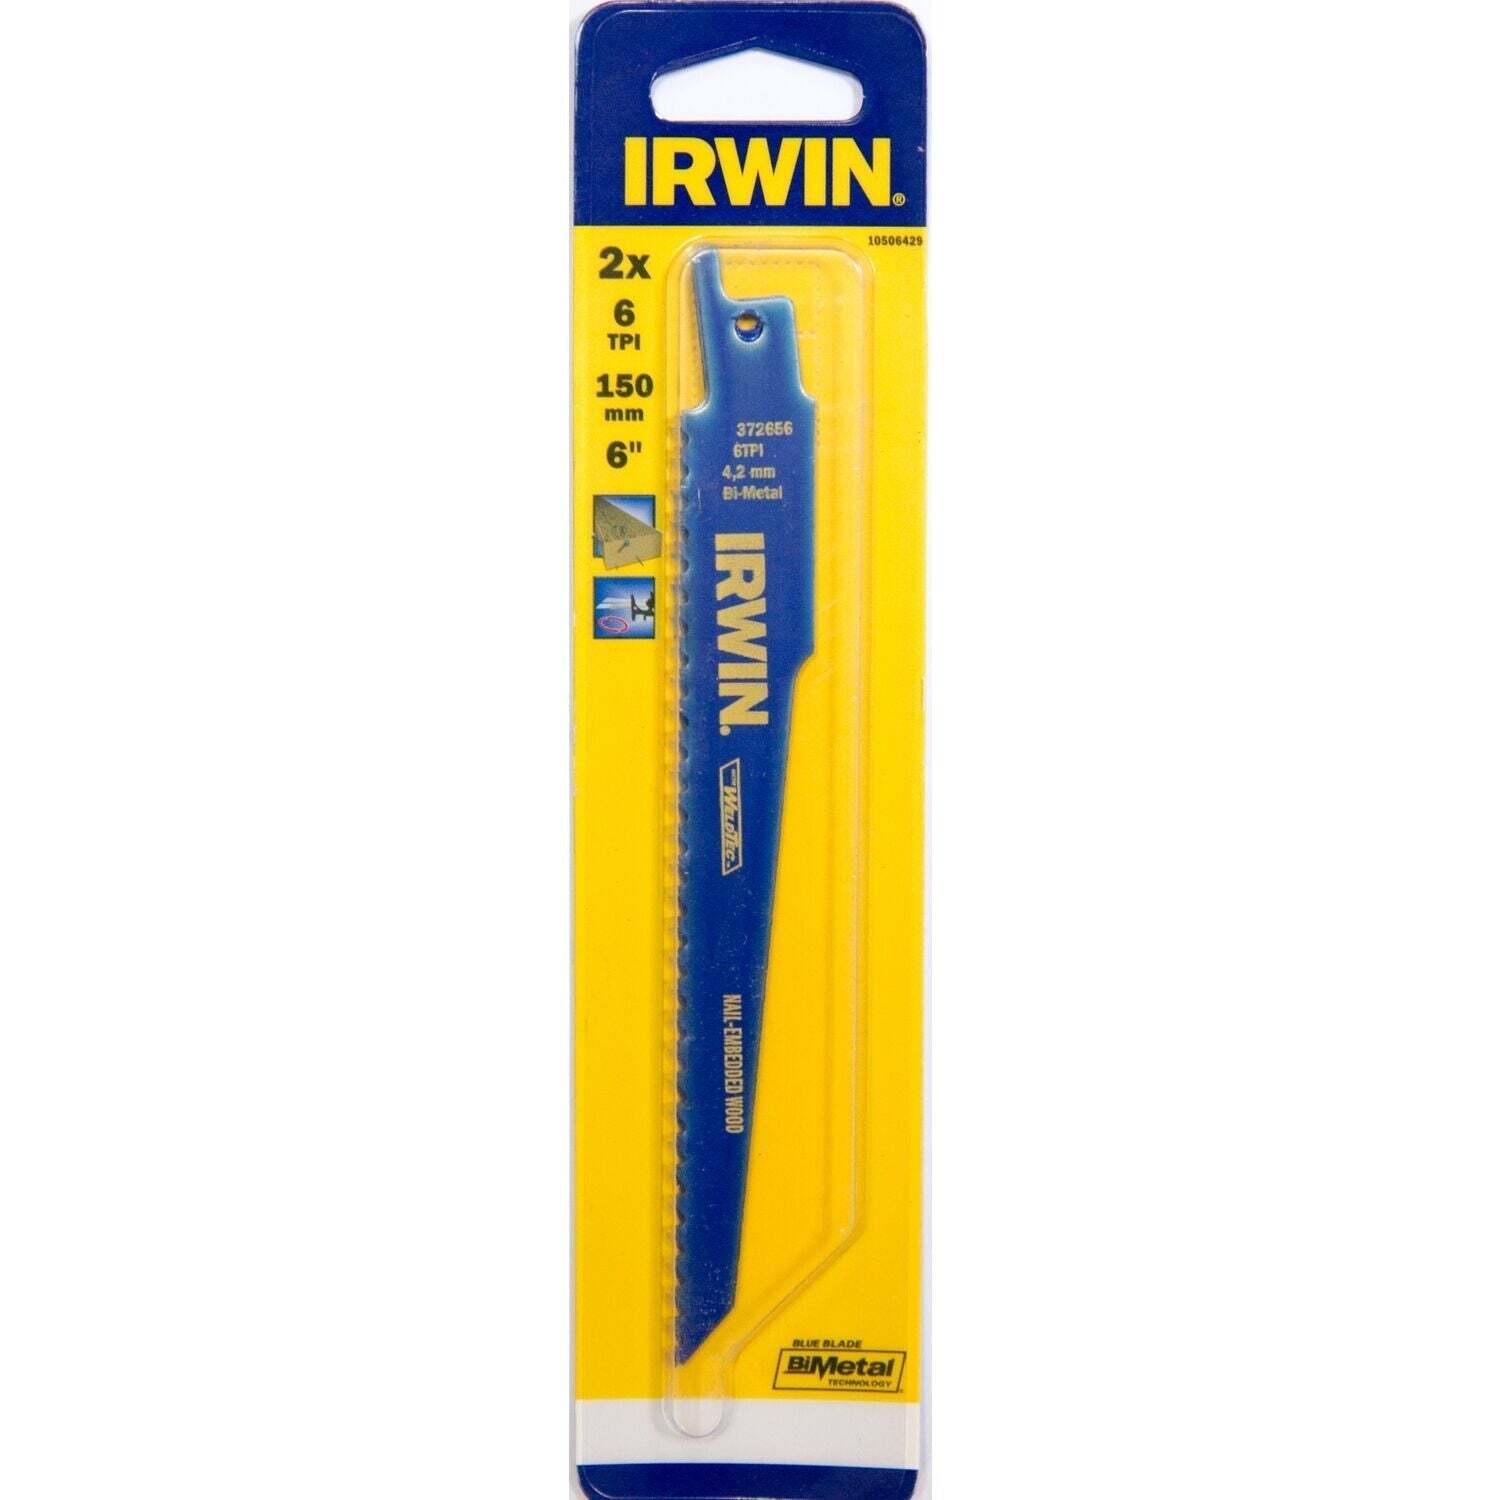 Irwin 656R 6" / 150 mm 6TPI, zagen van hout met spijkers - 10506429